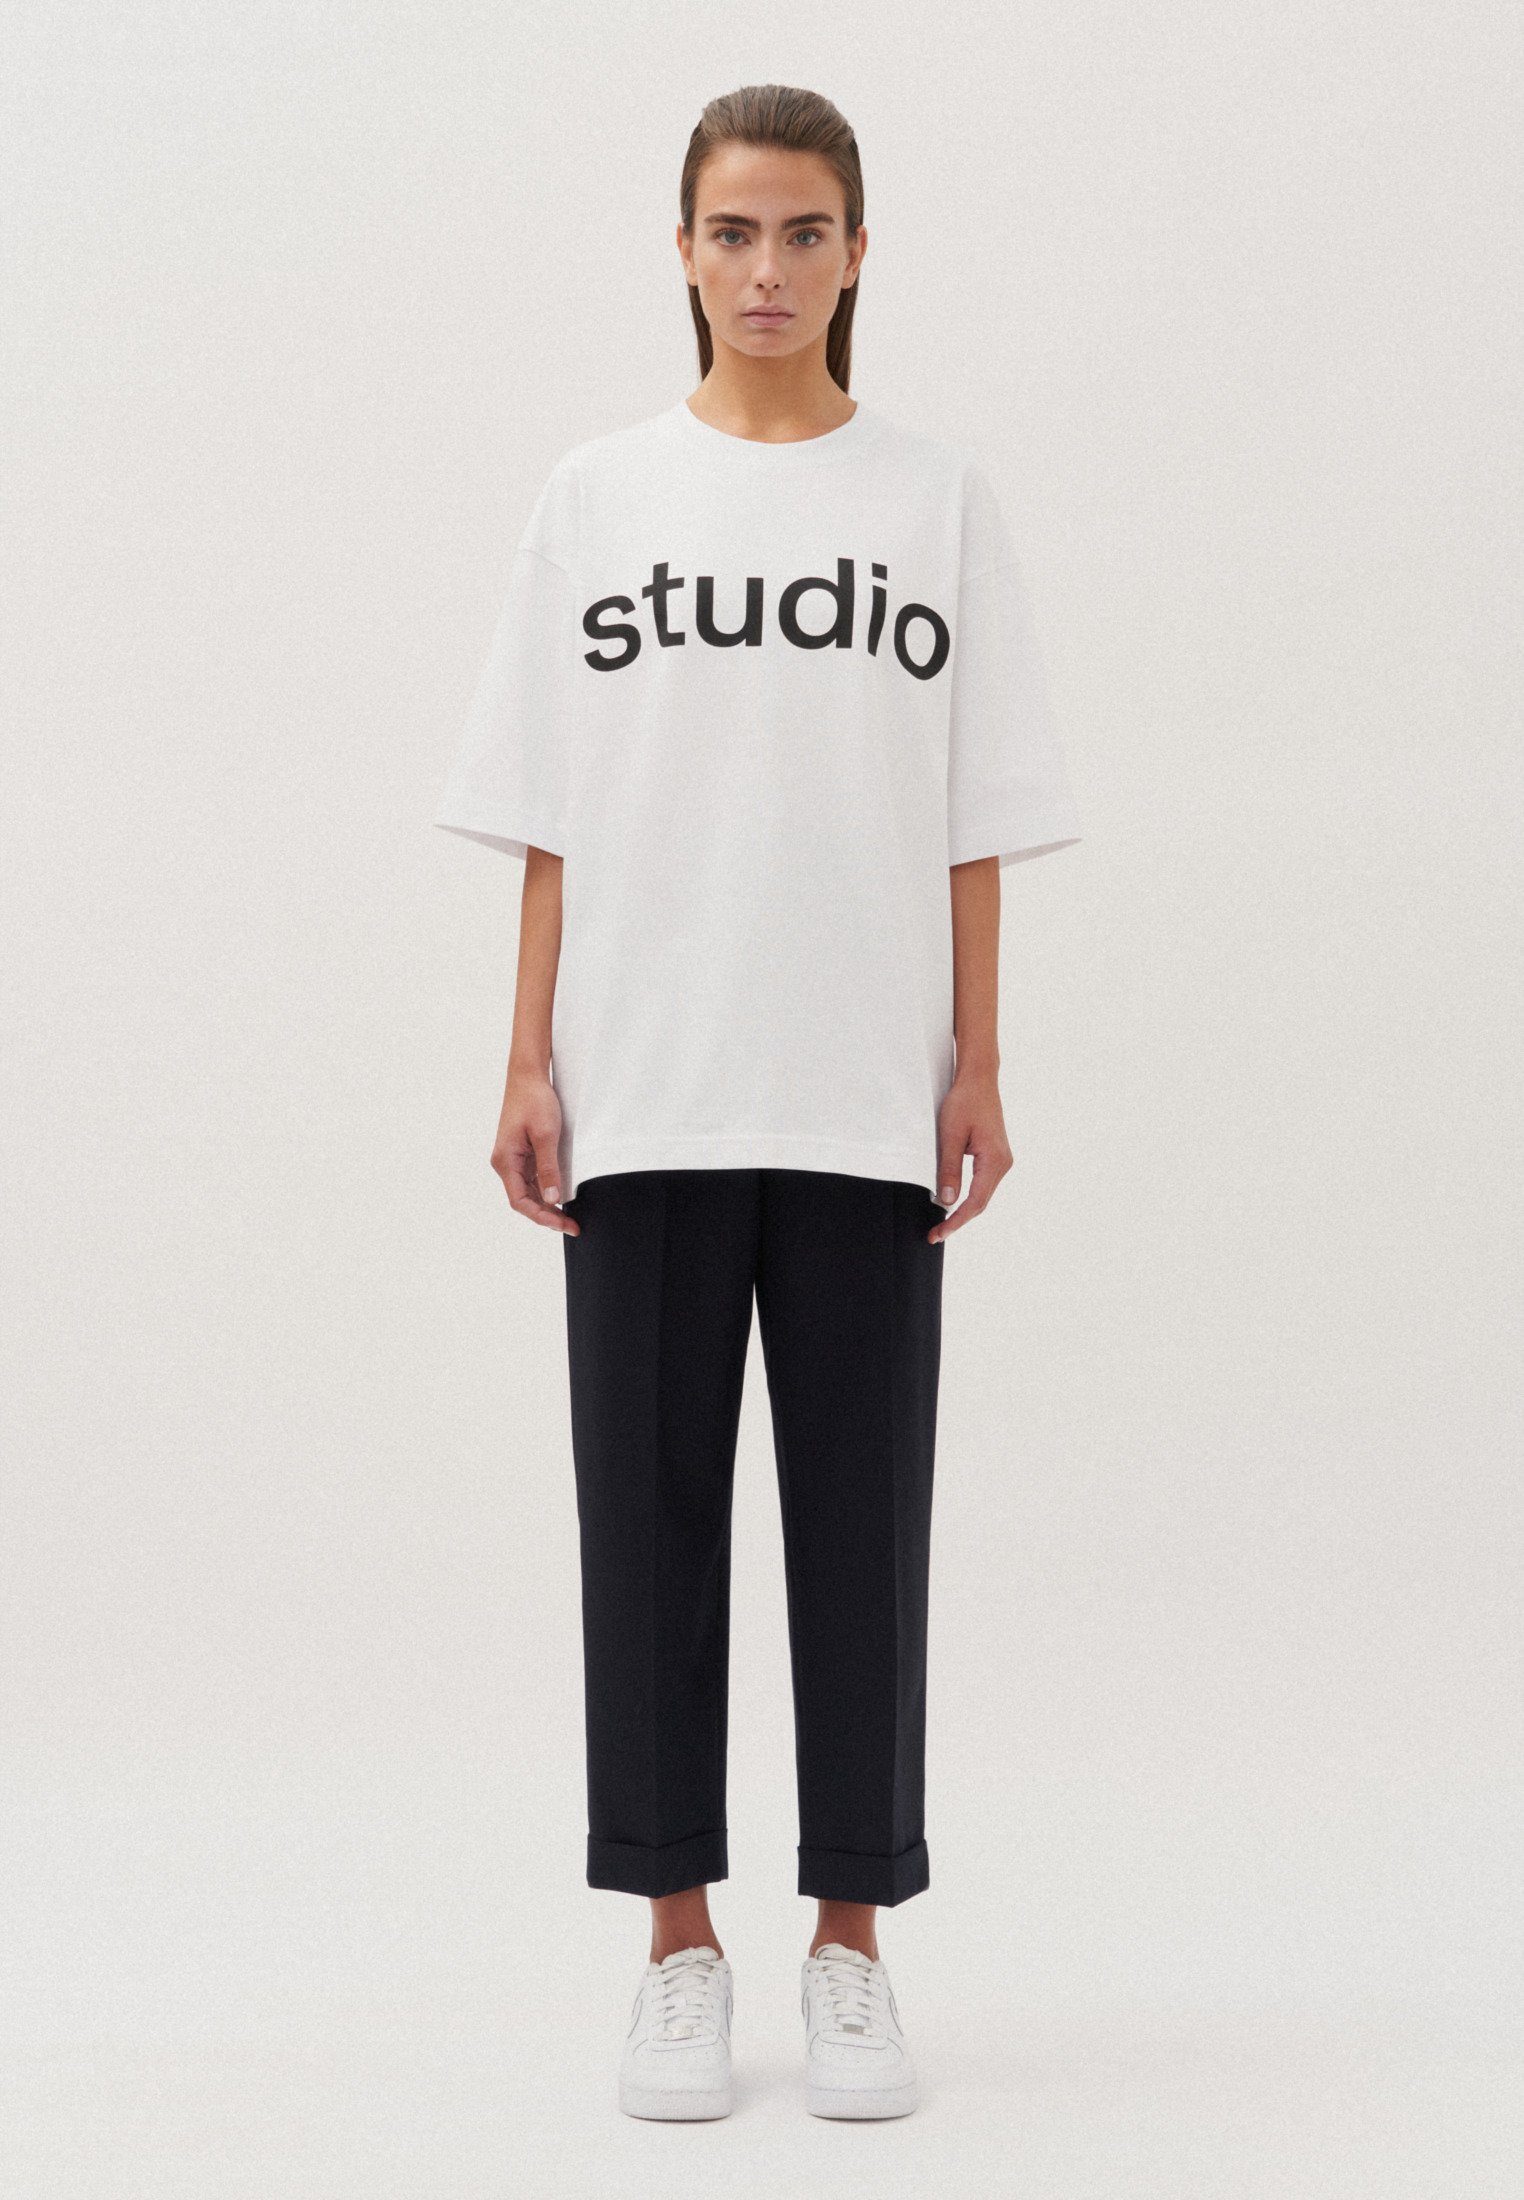 studio seidensticker Kurzarm Uni T-Shirt Studio Rundhals